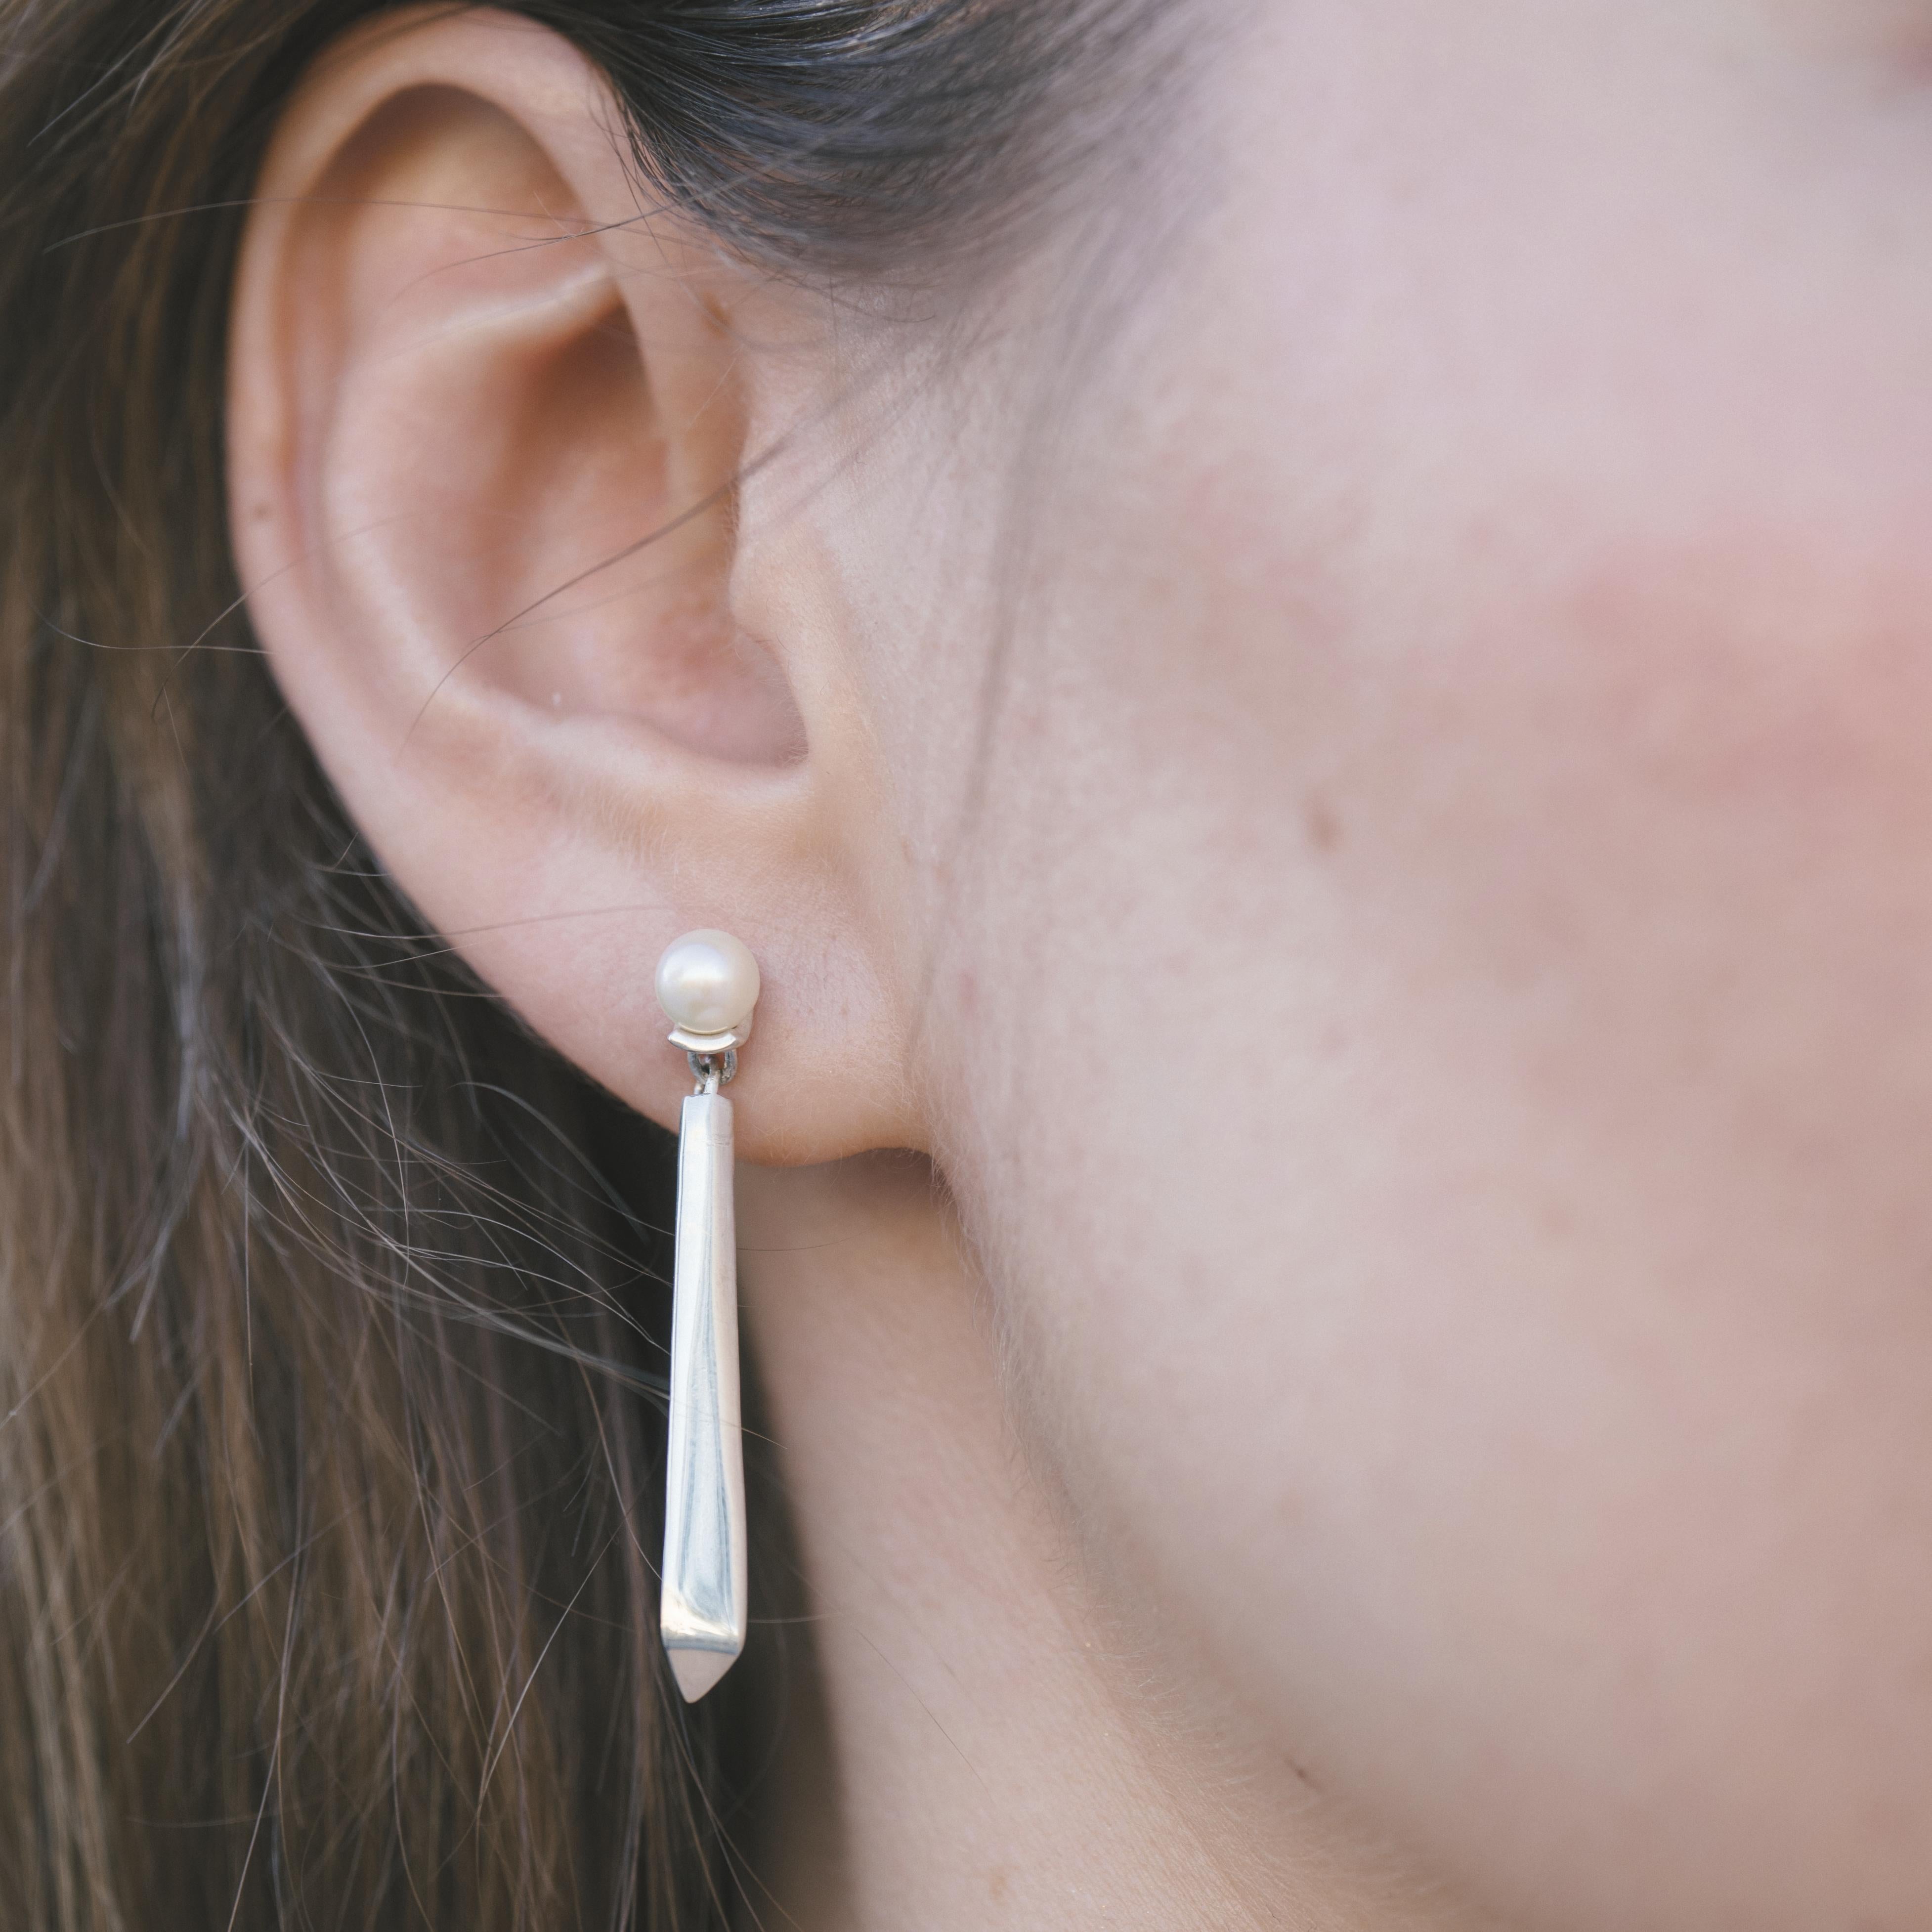 Der Vis Viva Drop Earring ist ein modernes Statement. Akoya-Perlen sind das Herzstück dieser Ohrringe, die im Licht schimmernde, opalisierende Reflexe aufweisen. Der Vis Viva Drop Earring bedeutet auf Lateinisch 